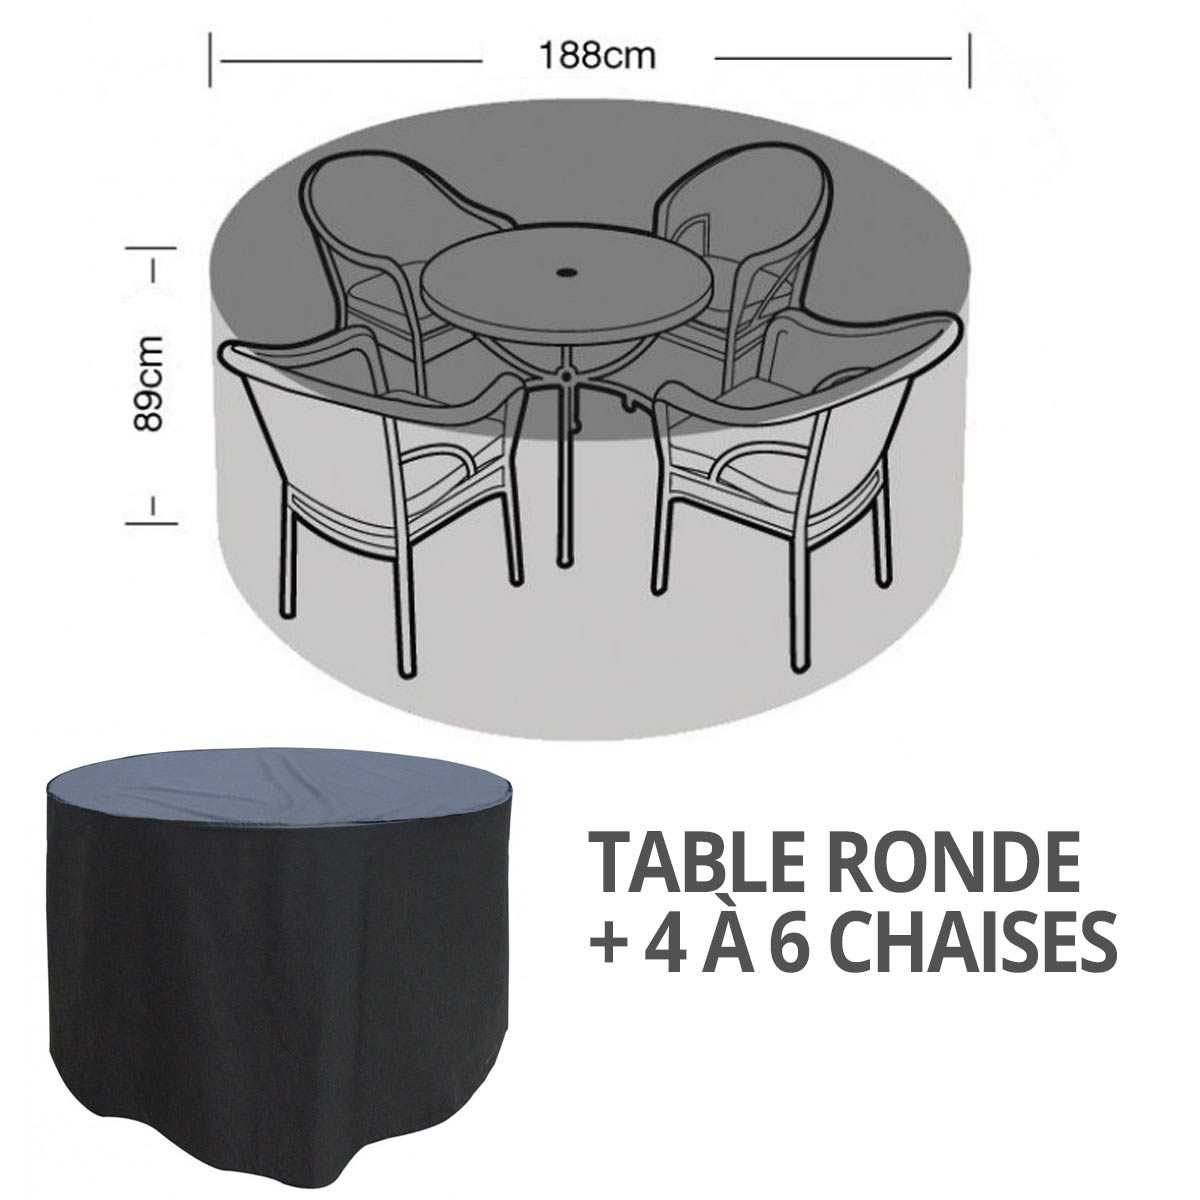 Housse bâche protection table ronde + 4 à 6 chaises diam. 188cm, vente au  meilleur prix